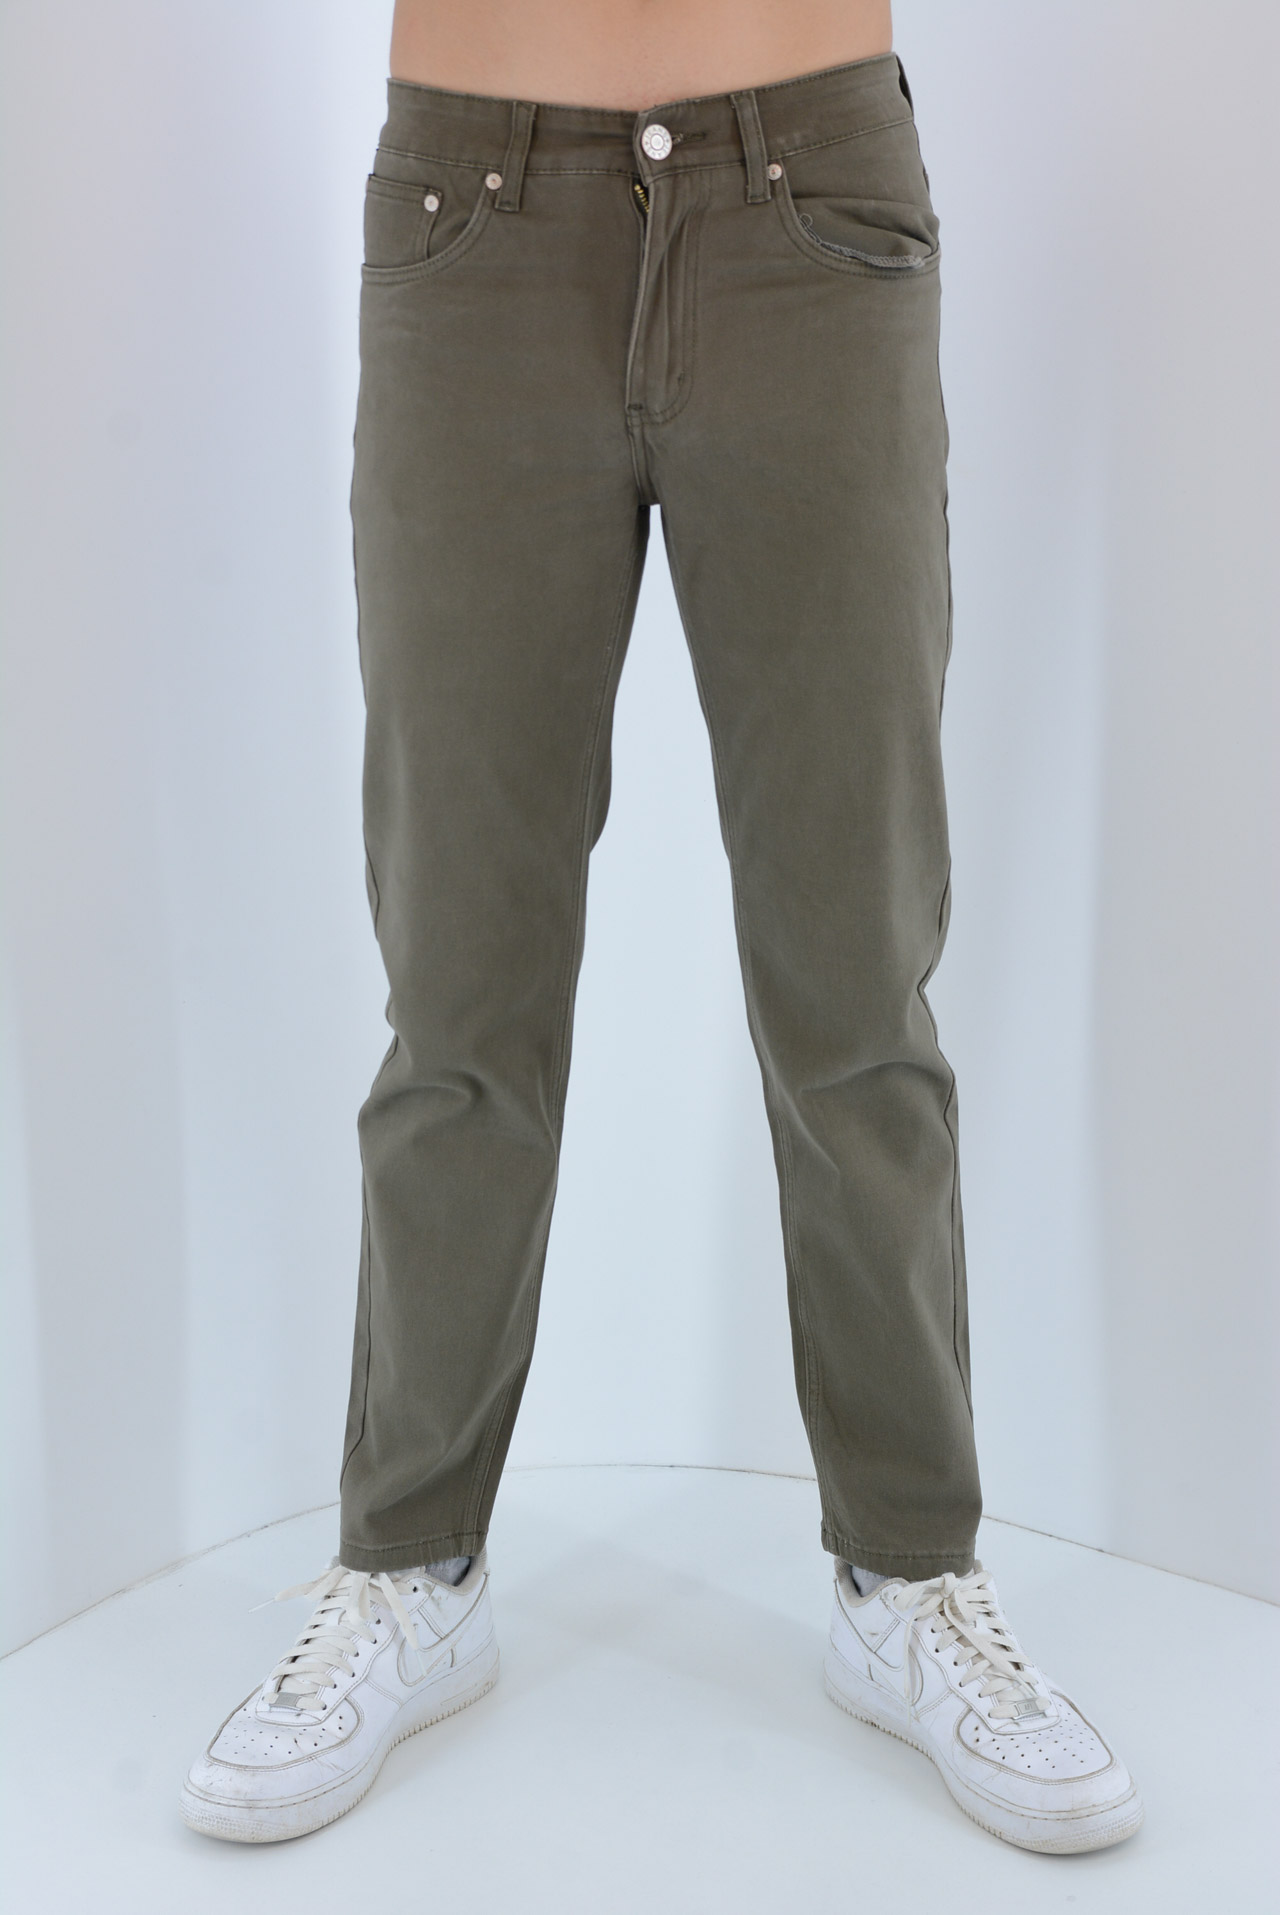 Pants male five-pocket pants code H203